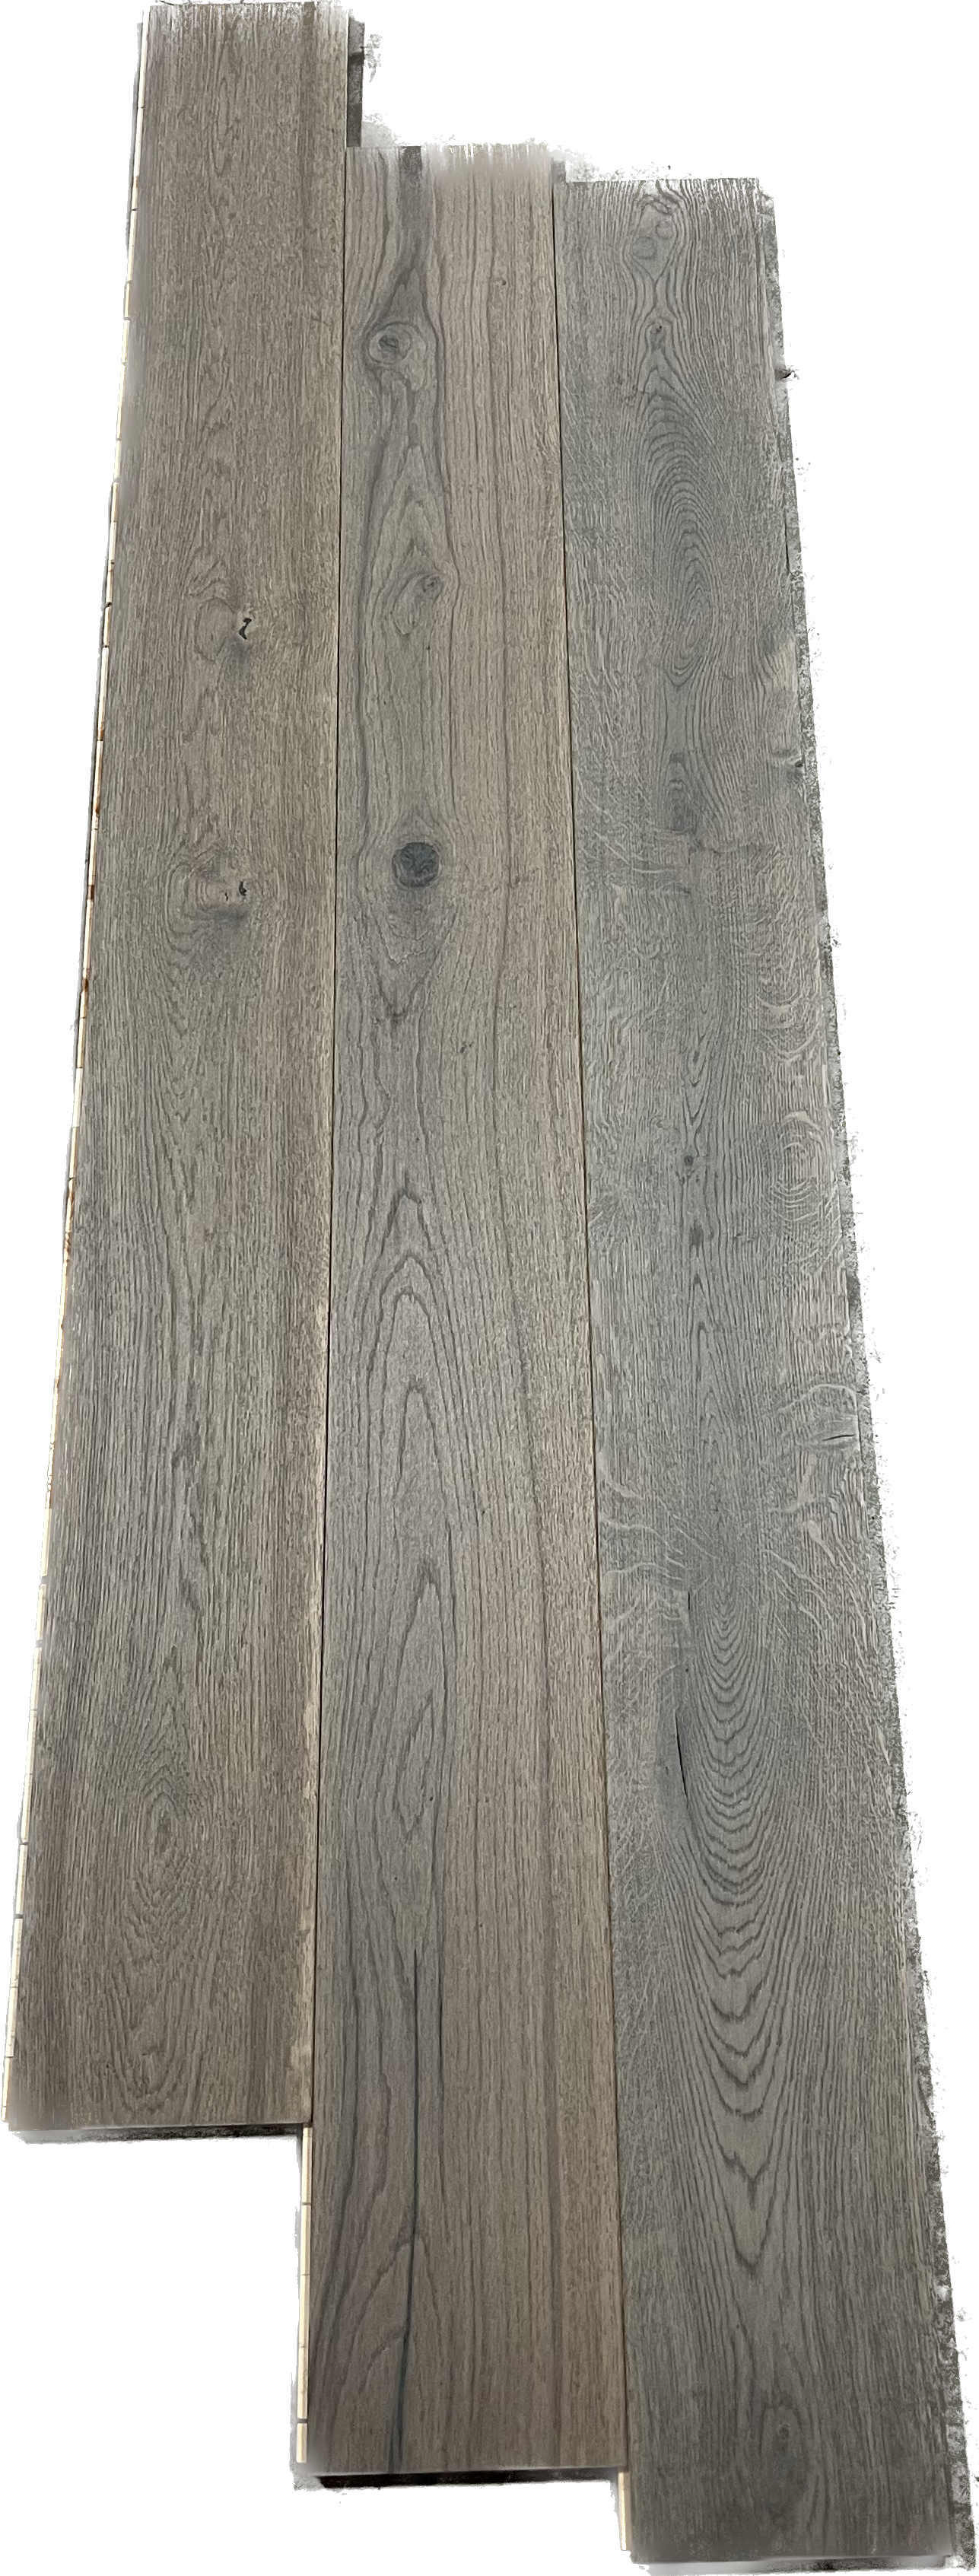 Engineered Wood Toasted Oak